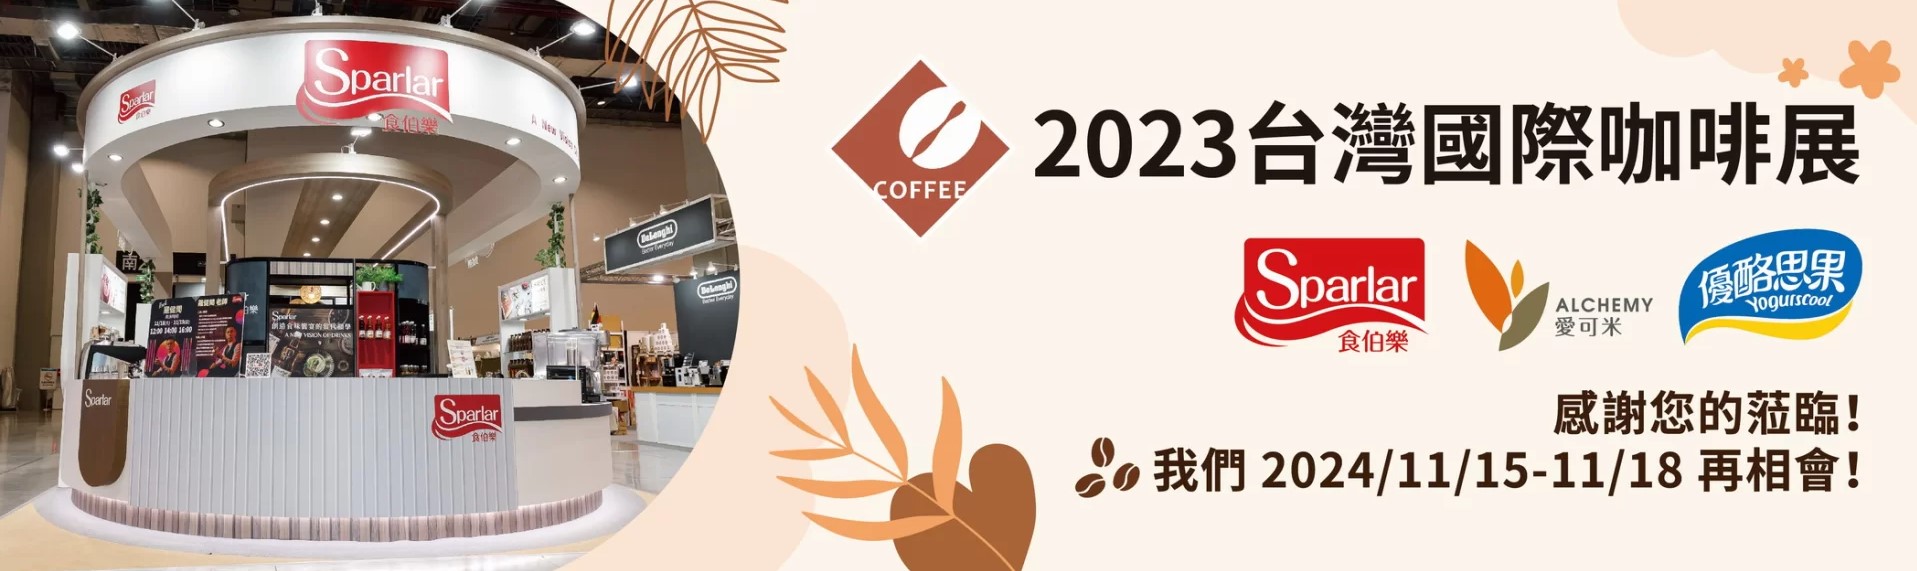 2023 Coffee Show